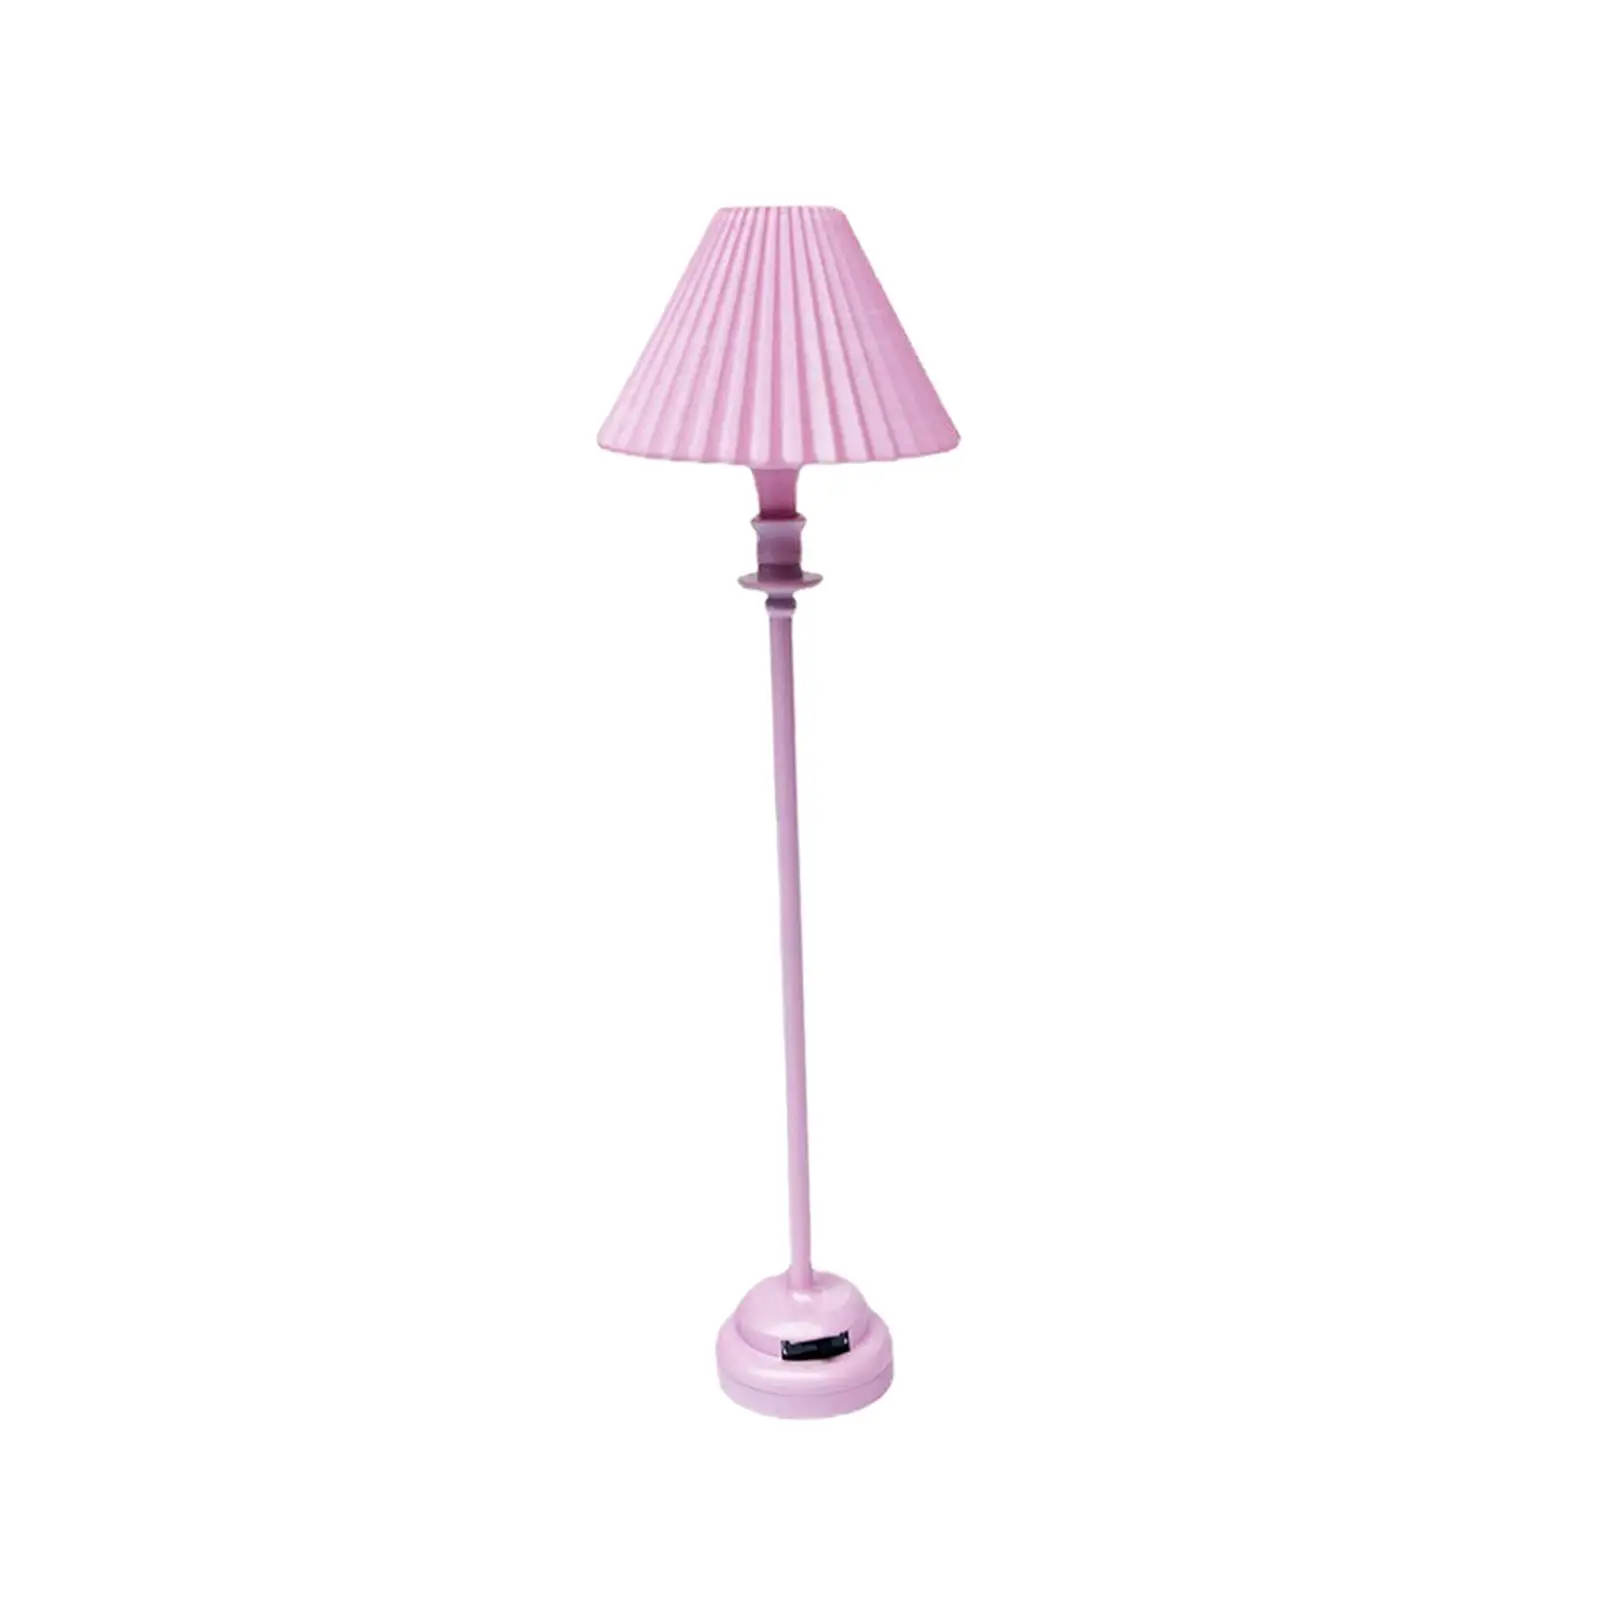 1/12 Mini Dollhouse Floor Lamp Decorative for Dolls House Room Decor